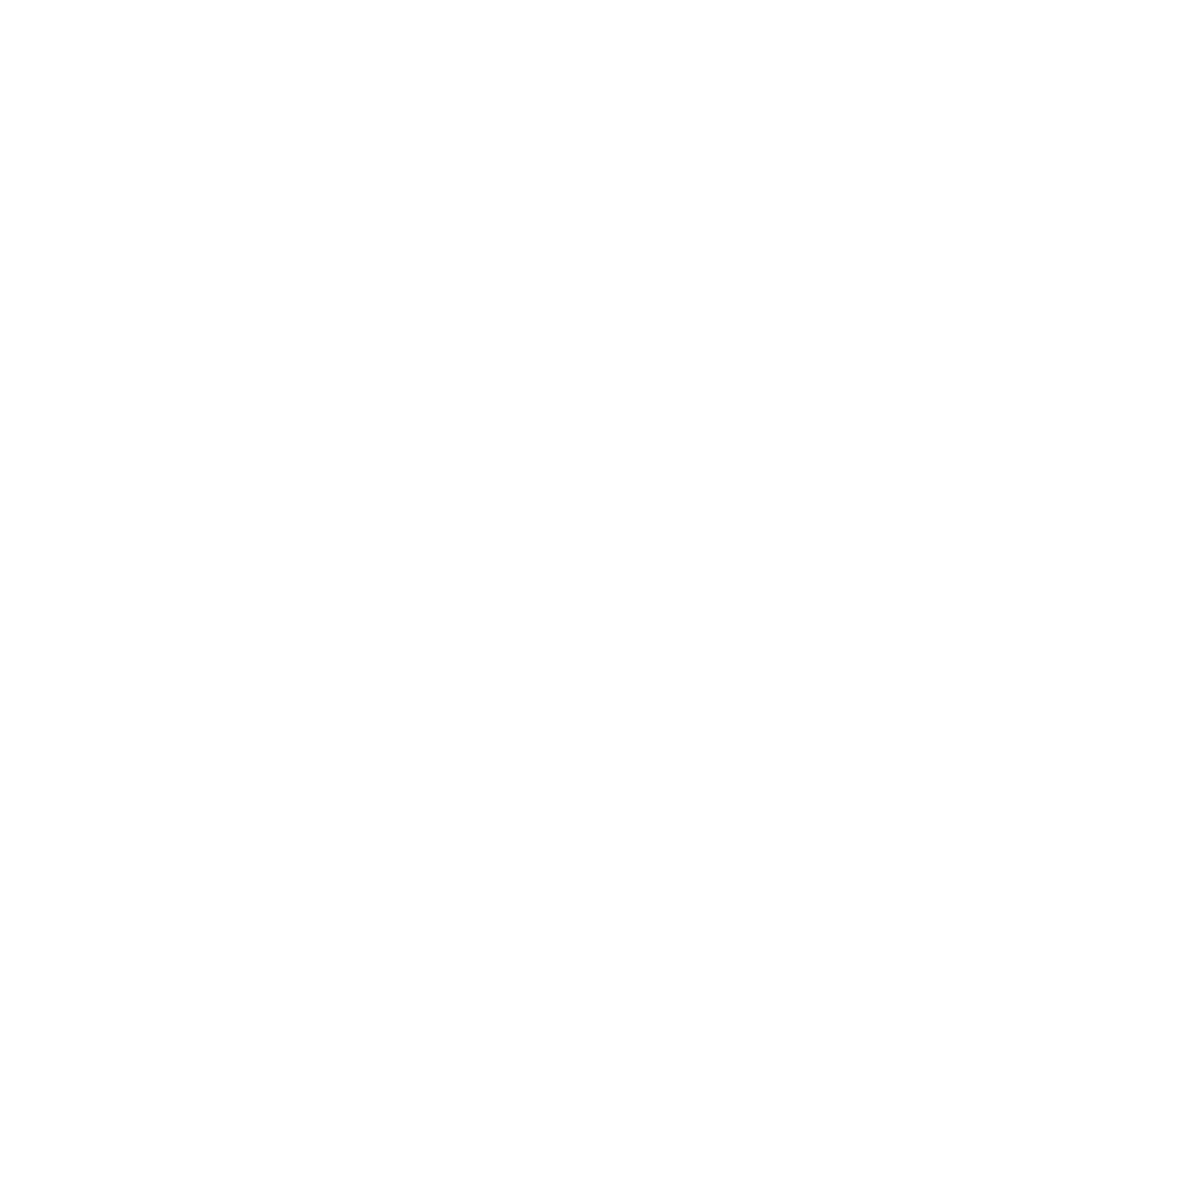 Dansk Gastro Kalv